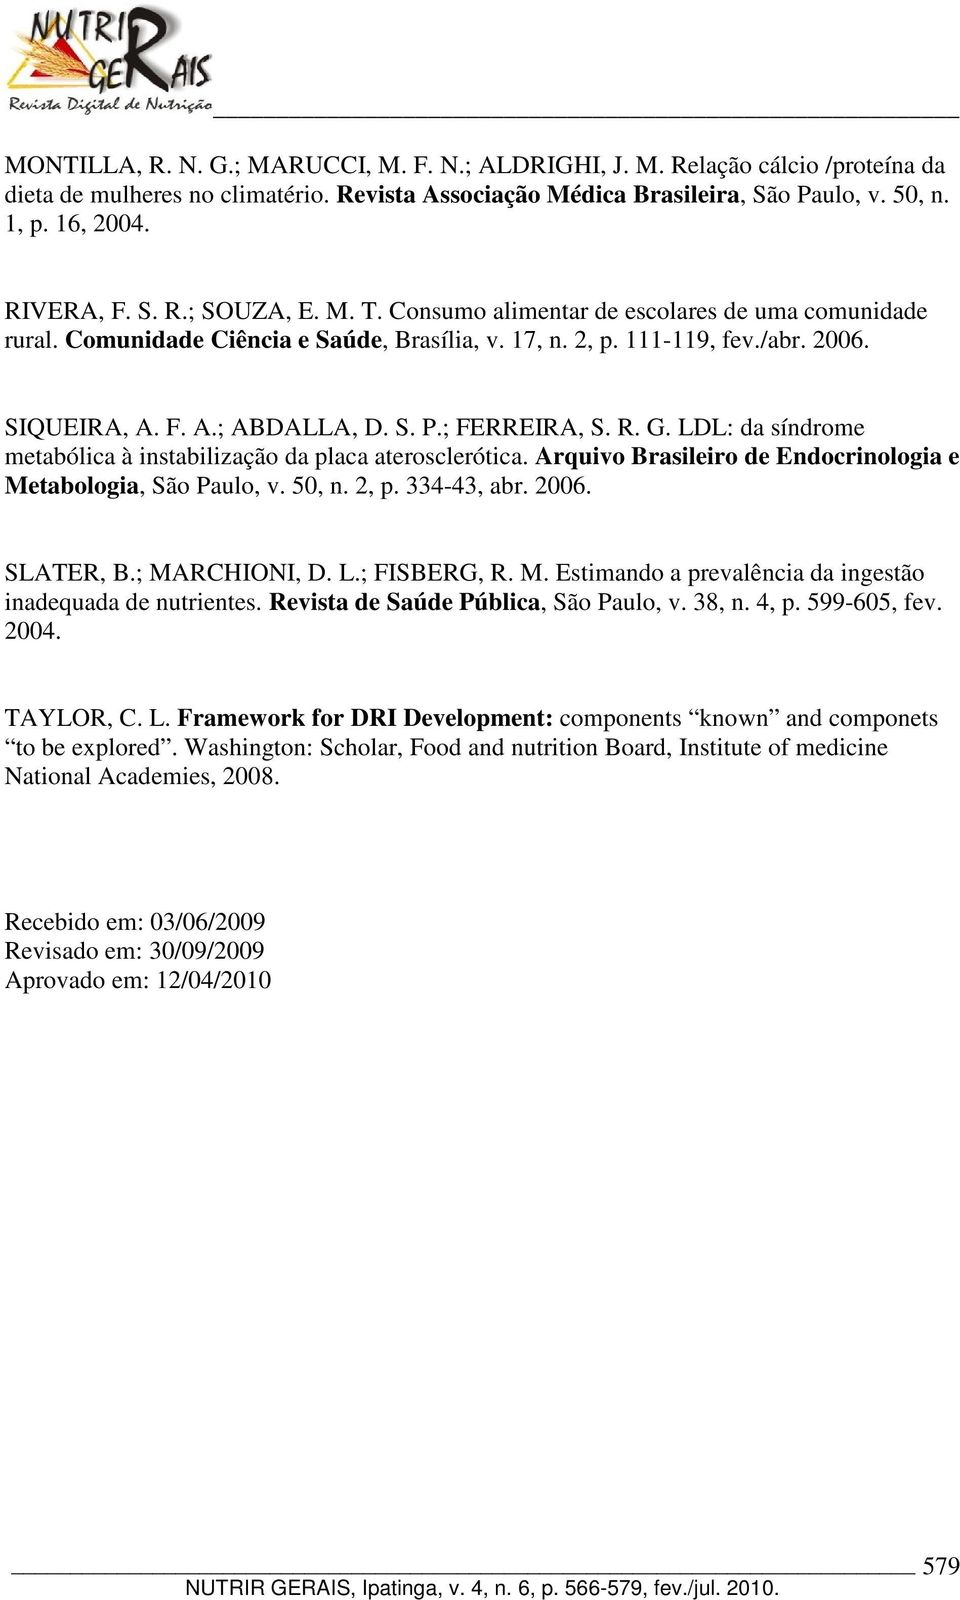 S. P.; FERREIRA, S. R. G. LDL: da síndrome metabólica à instabilização da placa aterosclerótica. Arquivo Brasileiro de Endocrinologia e Metabologia, São Paulo, v. 50, n. 2, p. 334-43, abr. 2006.